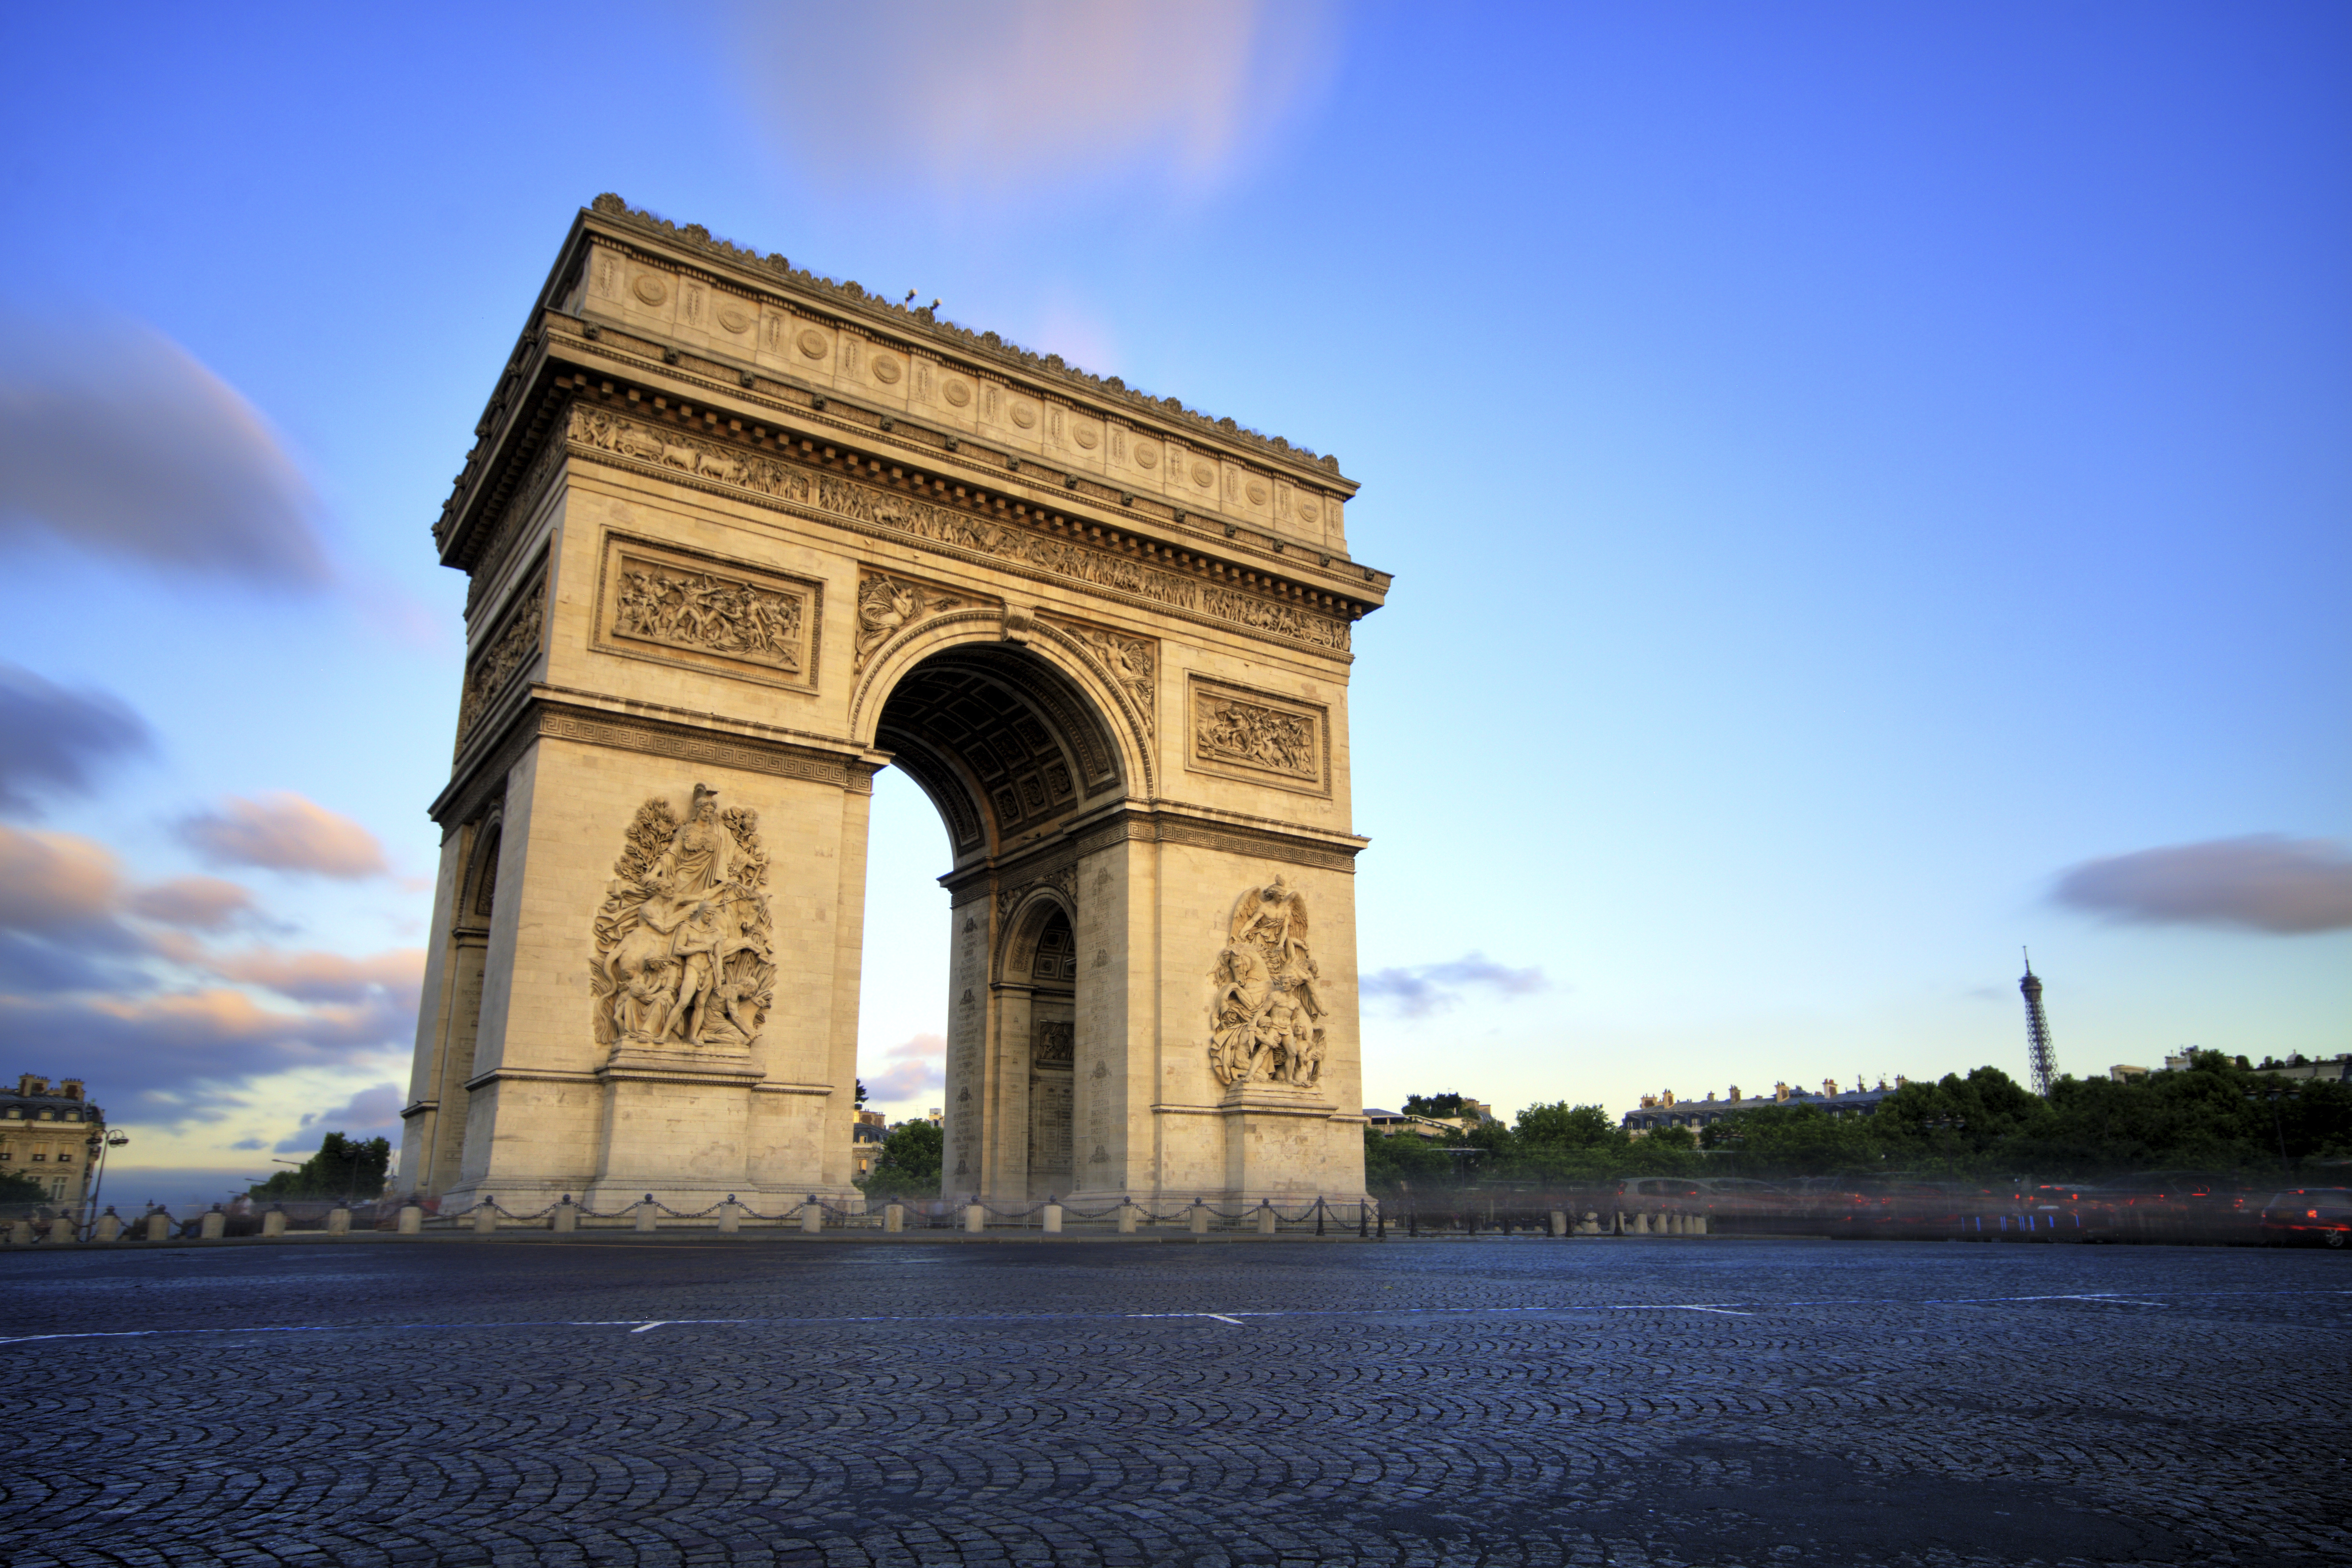 ถนนฌ็องเซลิเซ่และประตูชัยนโปเลียน (Champs-Élysées & Arc de Triomphe) กรุงปารีส ประเทศฝรั่งเศส